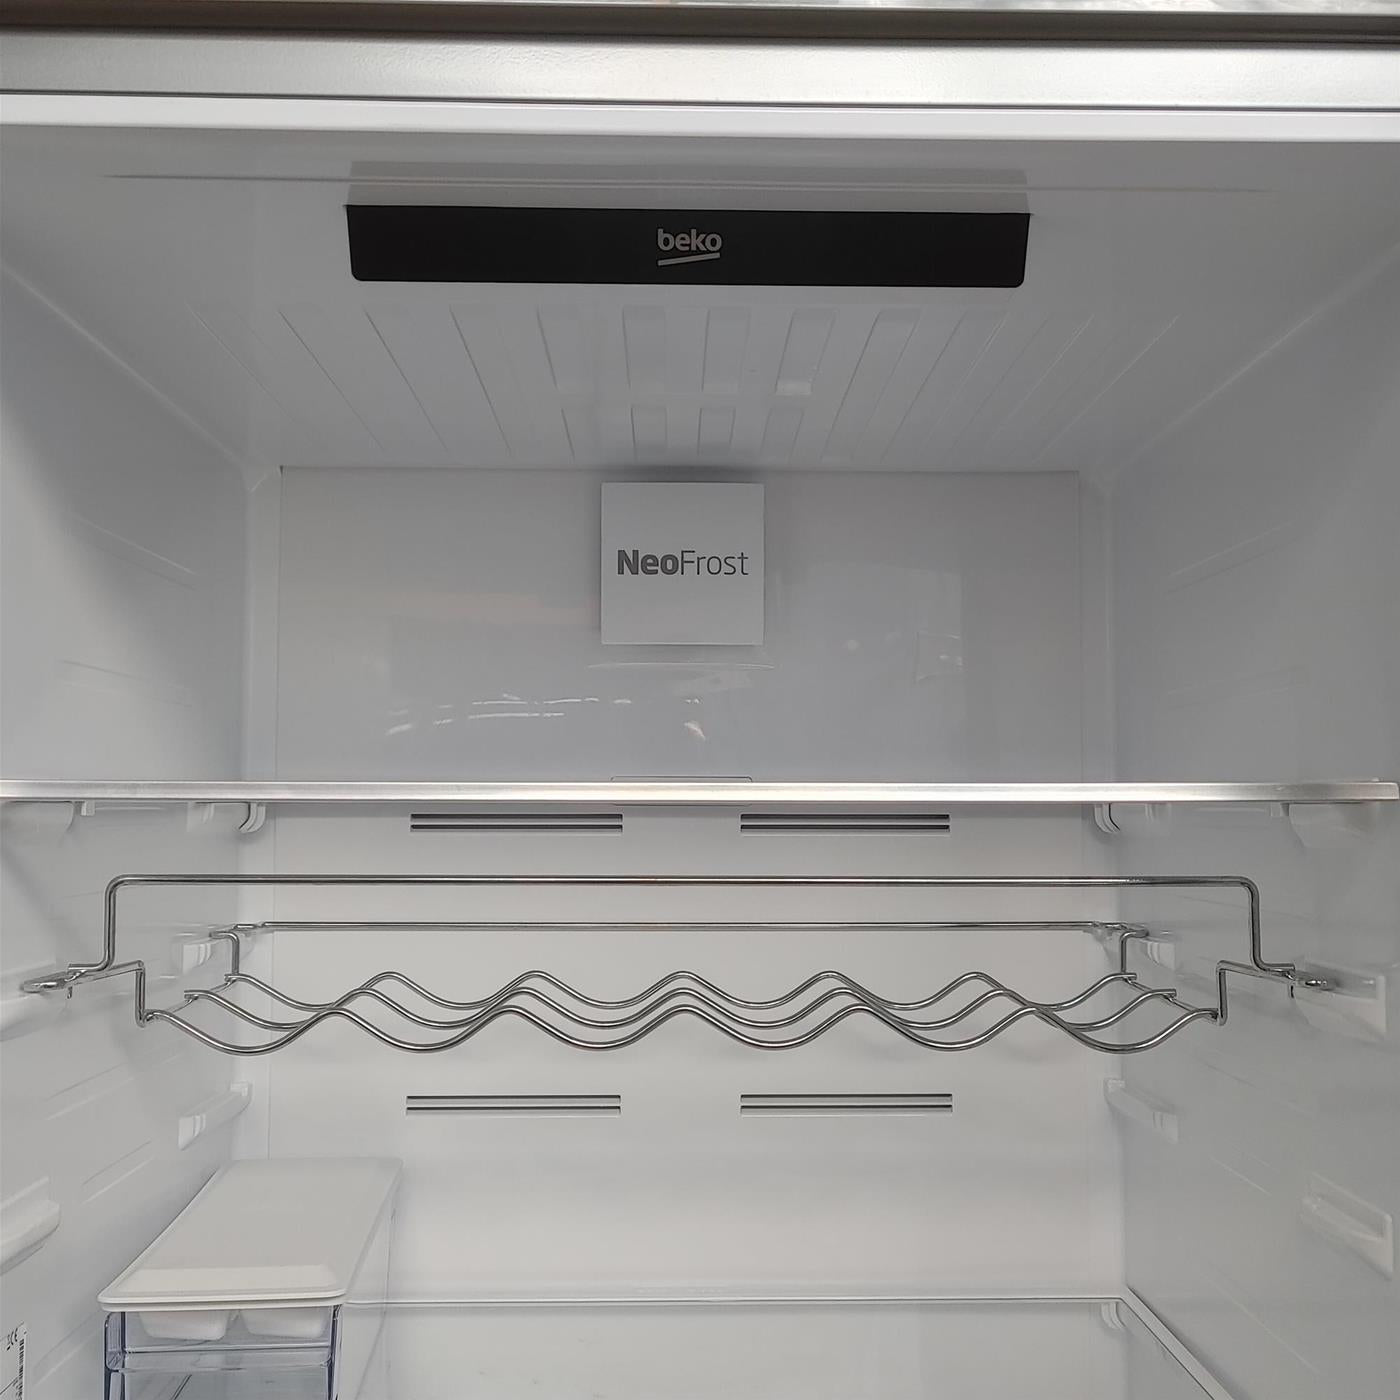 Beko RCNE560E50ZXPN frigorifero con congelatore Libera installazione 514 LD Acciaio inox